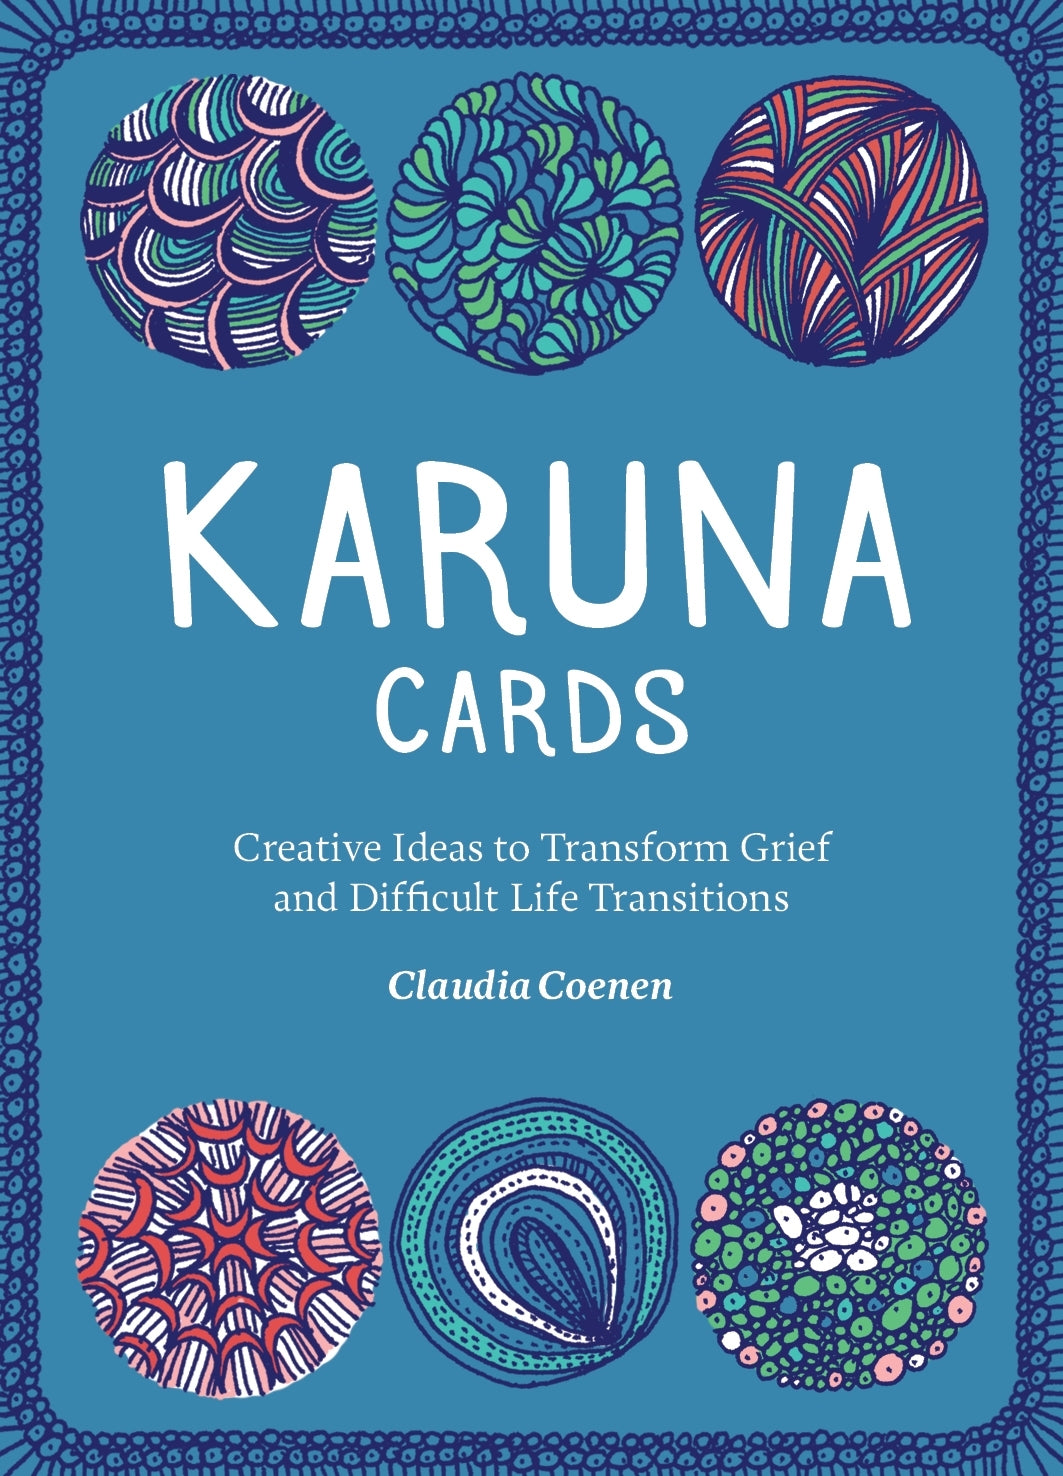 Karuna Cards by Claudia Coenen